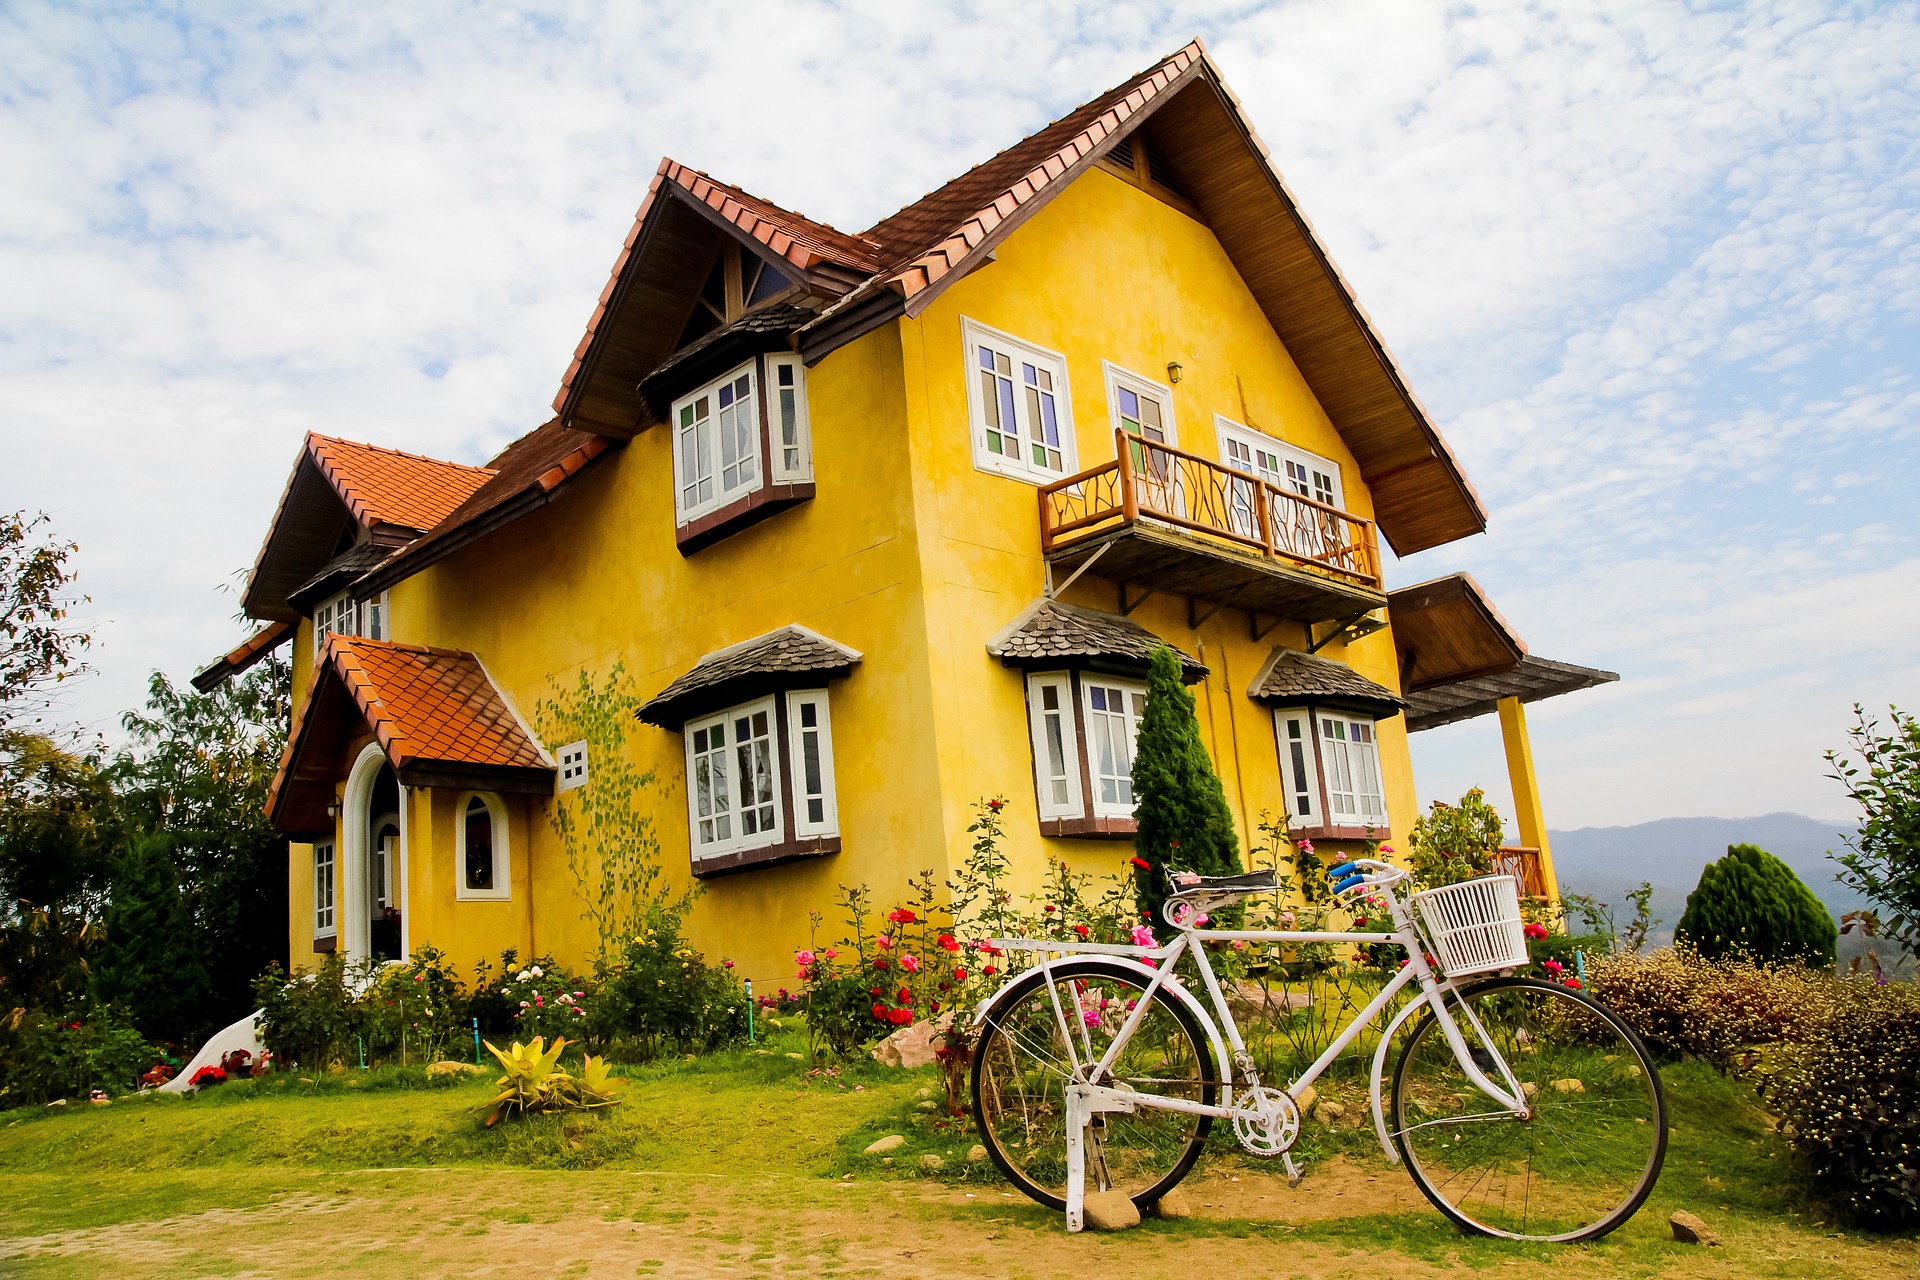 Wohnhaus mit gelber Fassade, im Vordergrund steht ein Fahrrad.